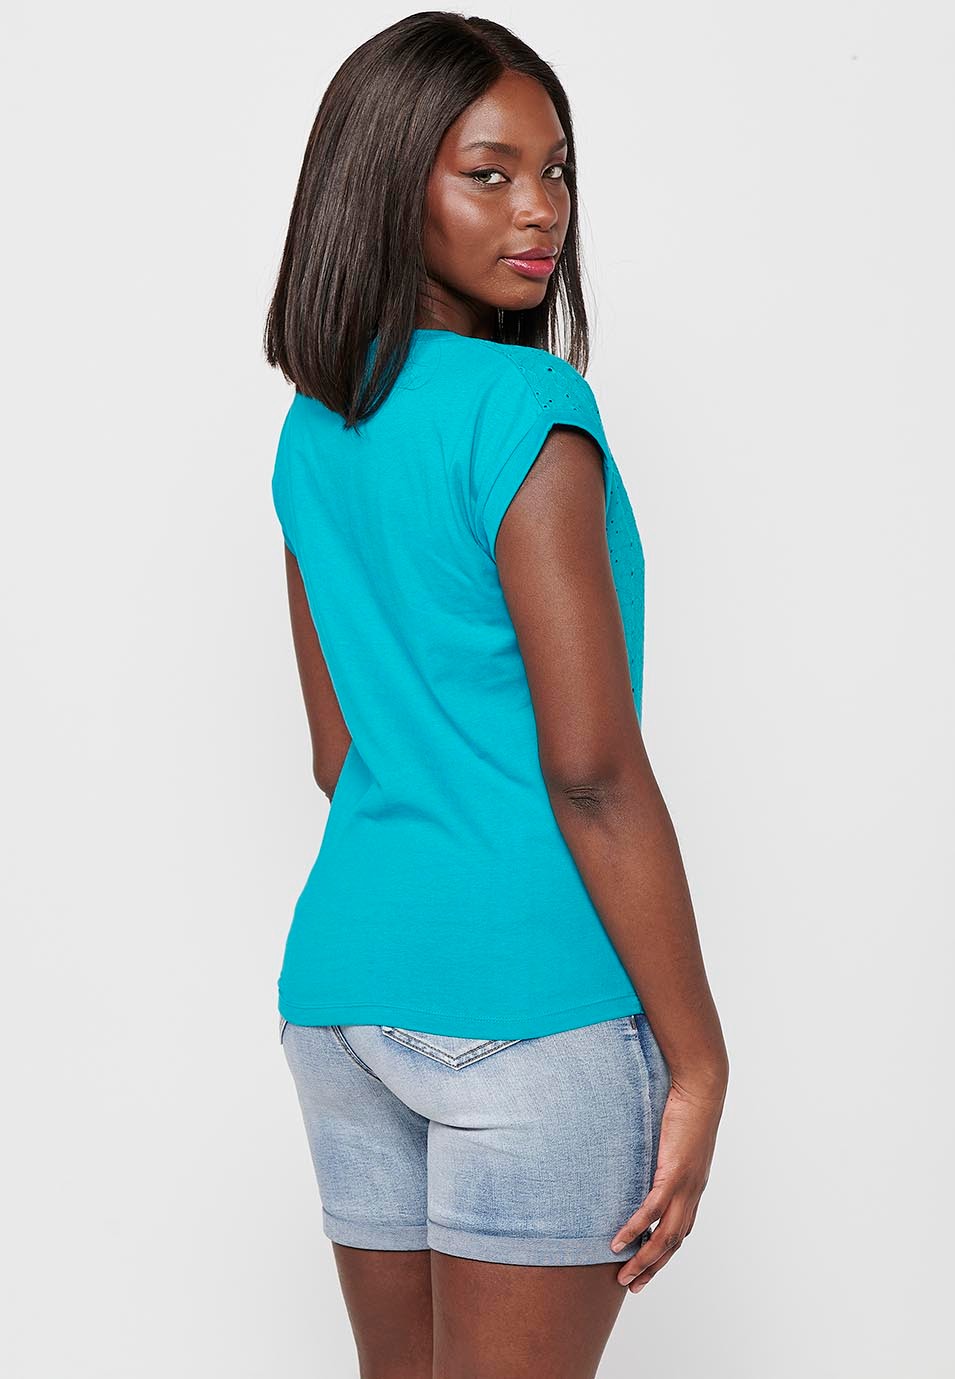 Aquamarine, kurzärmliges Damen-T-Shirt mit rundem Ausschnitt und Stickerei